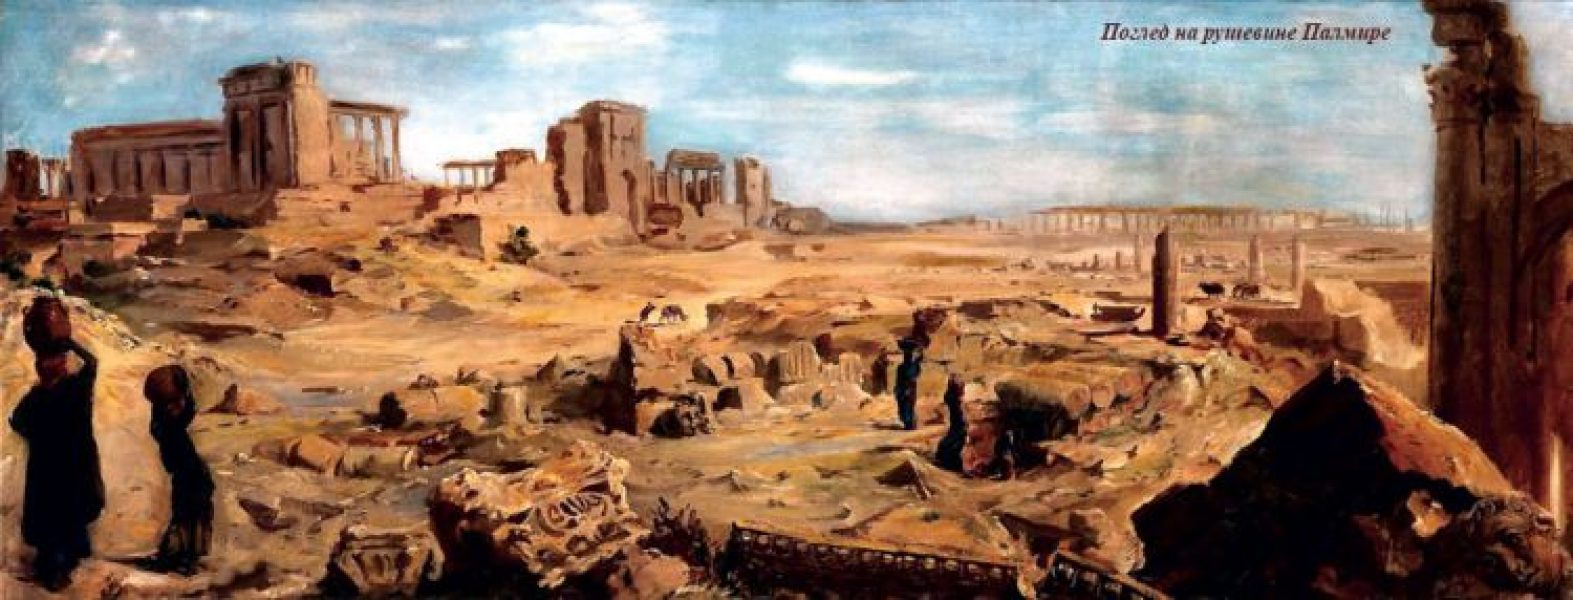 Palmira u vreme slave – Kraljica kamena i peska_61fb4bad9d2aa.jpeg